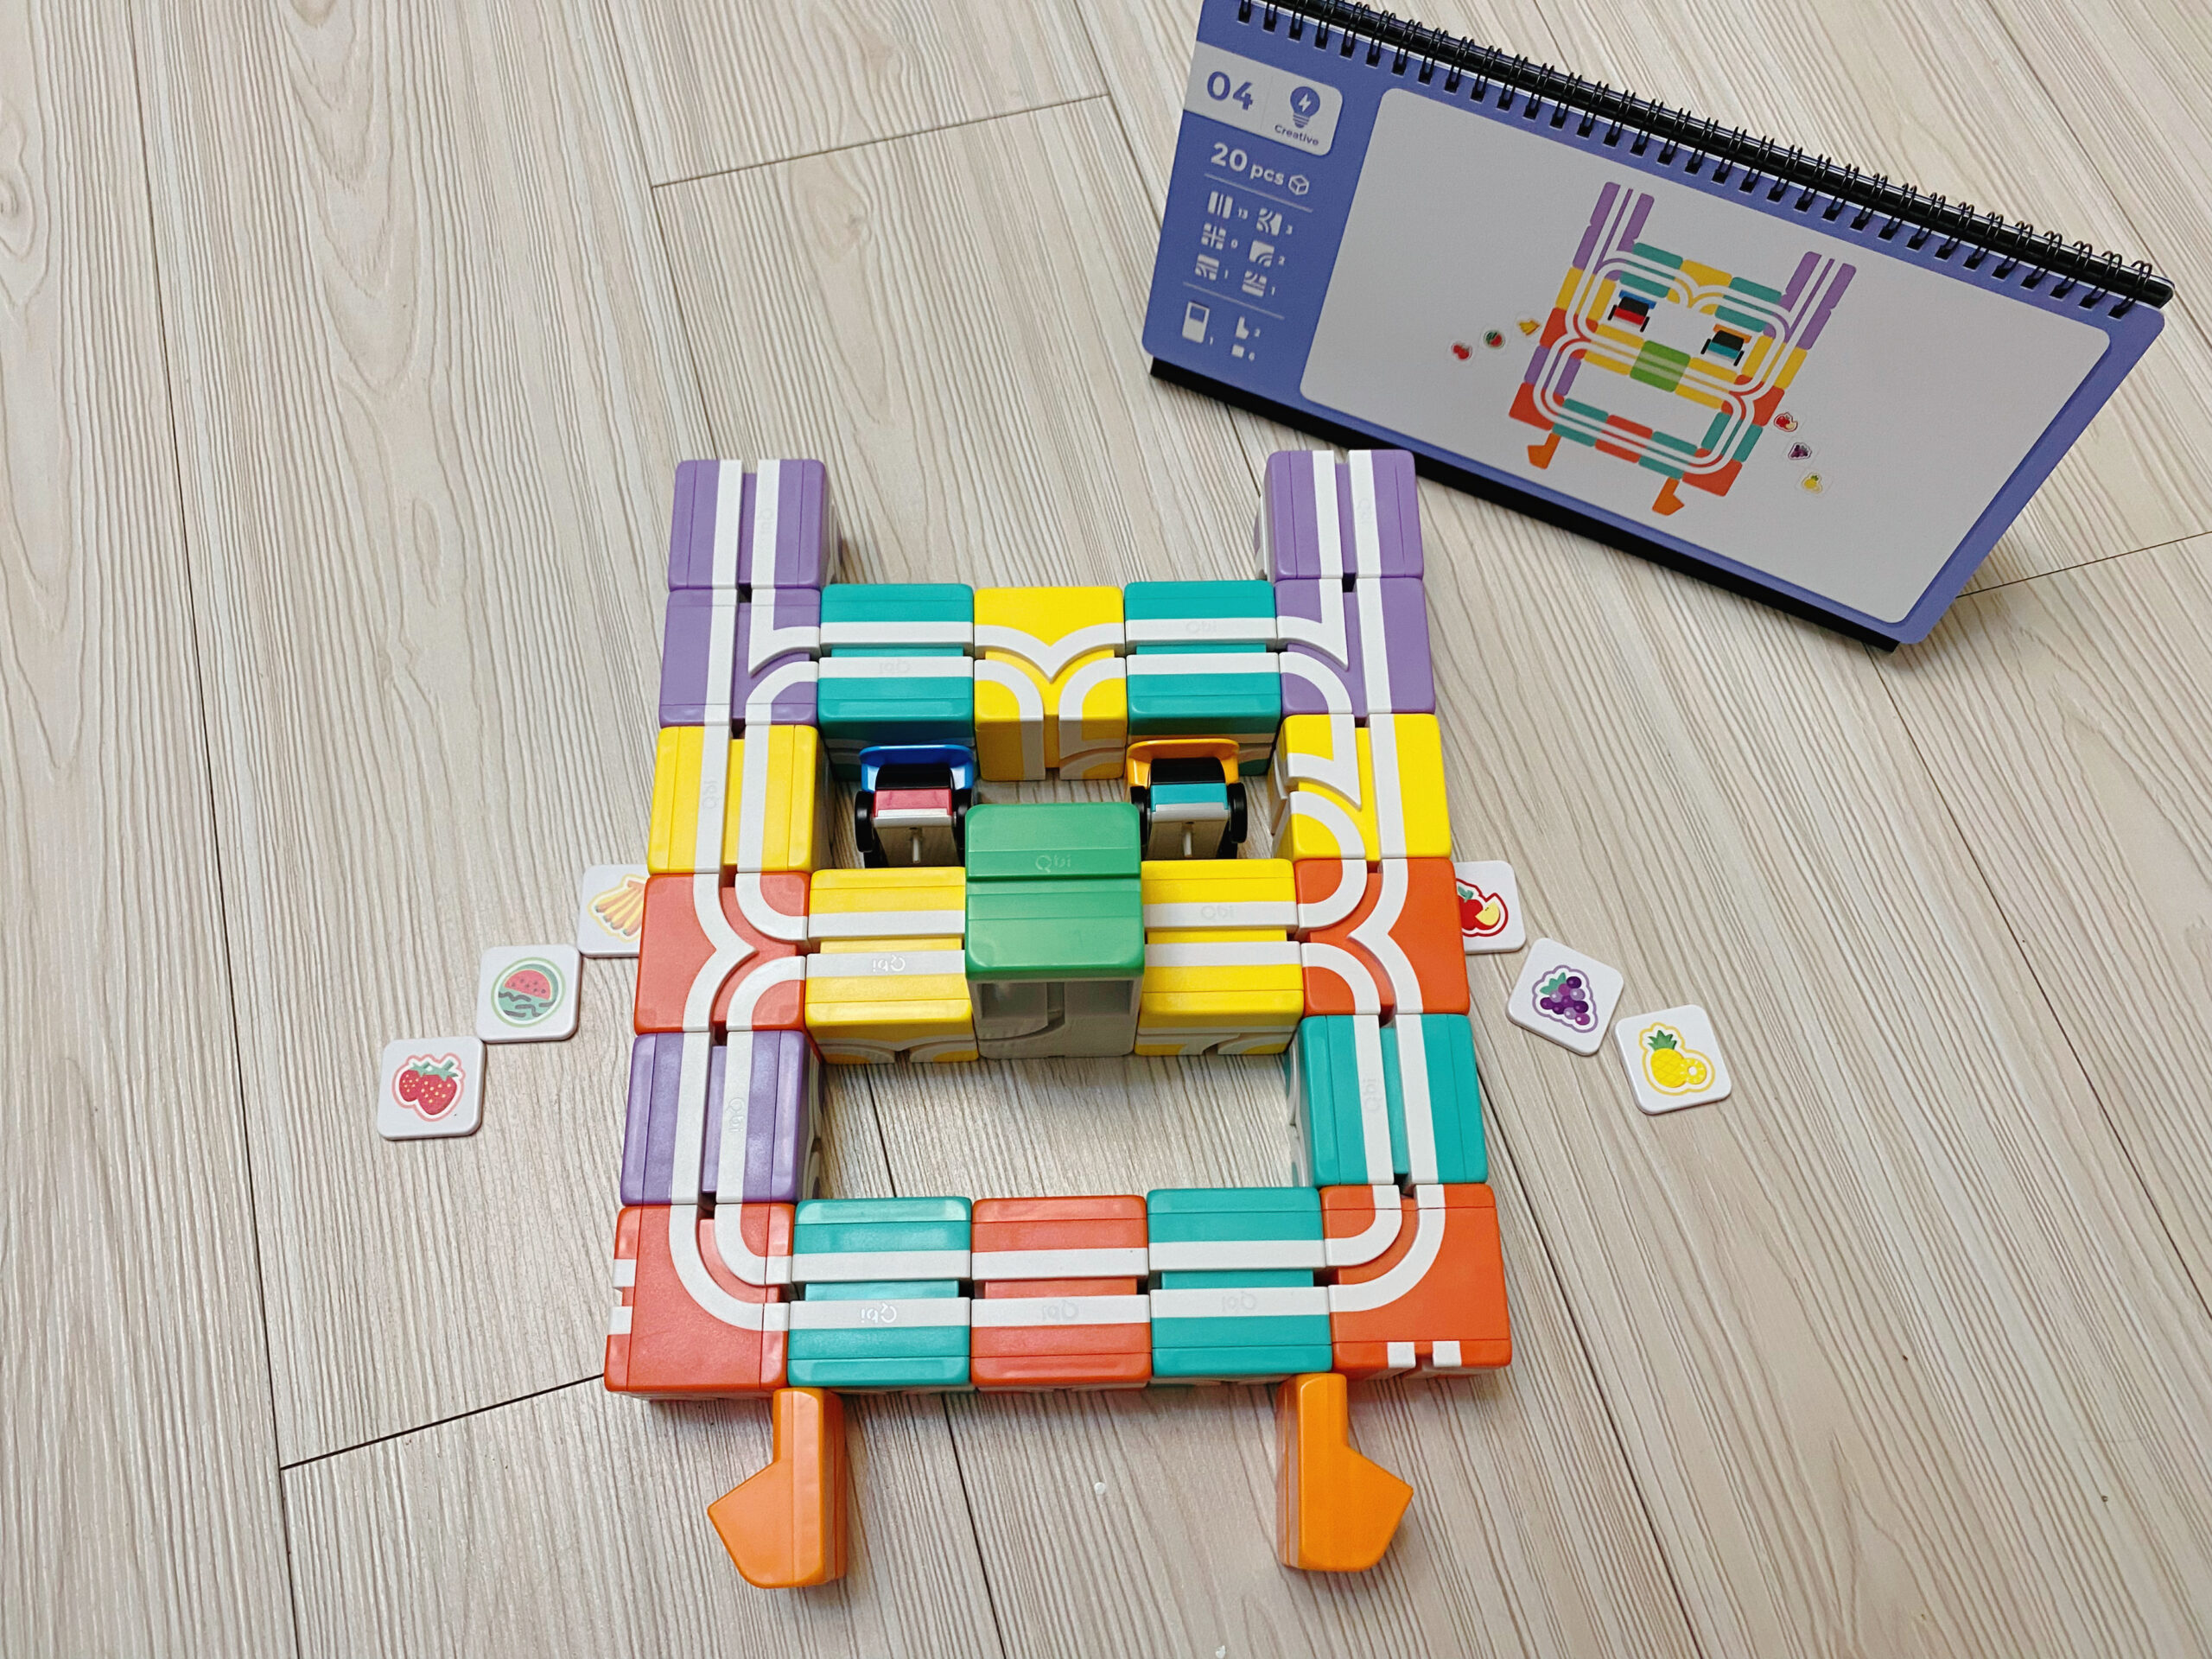 《學齡前兒童玩具推薦》Qbi 益智軌道磁吸玩具，台灣設計製造輕鬆玩變化多(折扣碼) @神農太太底家